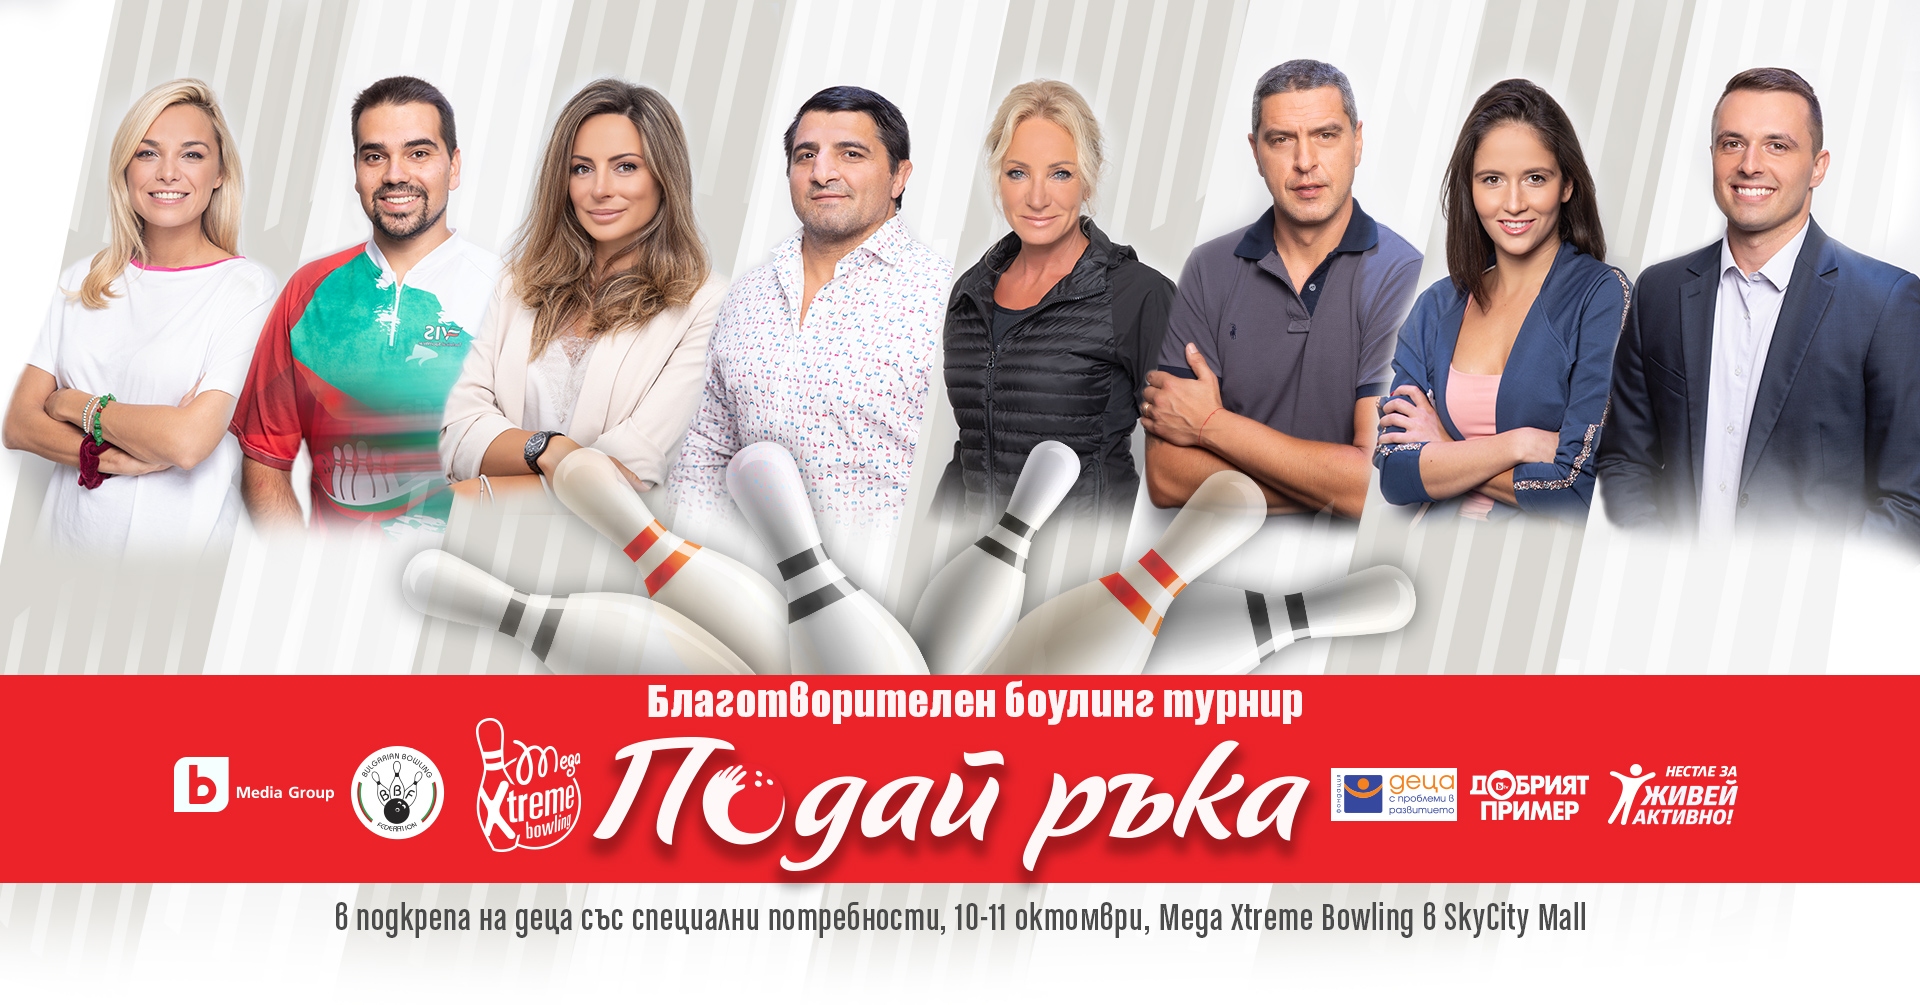 Изявени български спортисти и любими лица от телевизионния екран подават